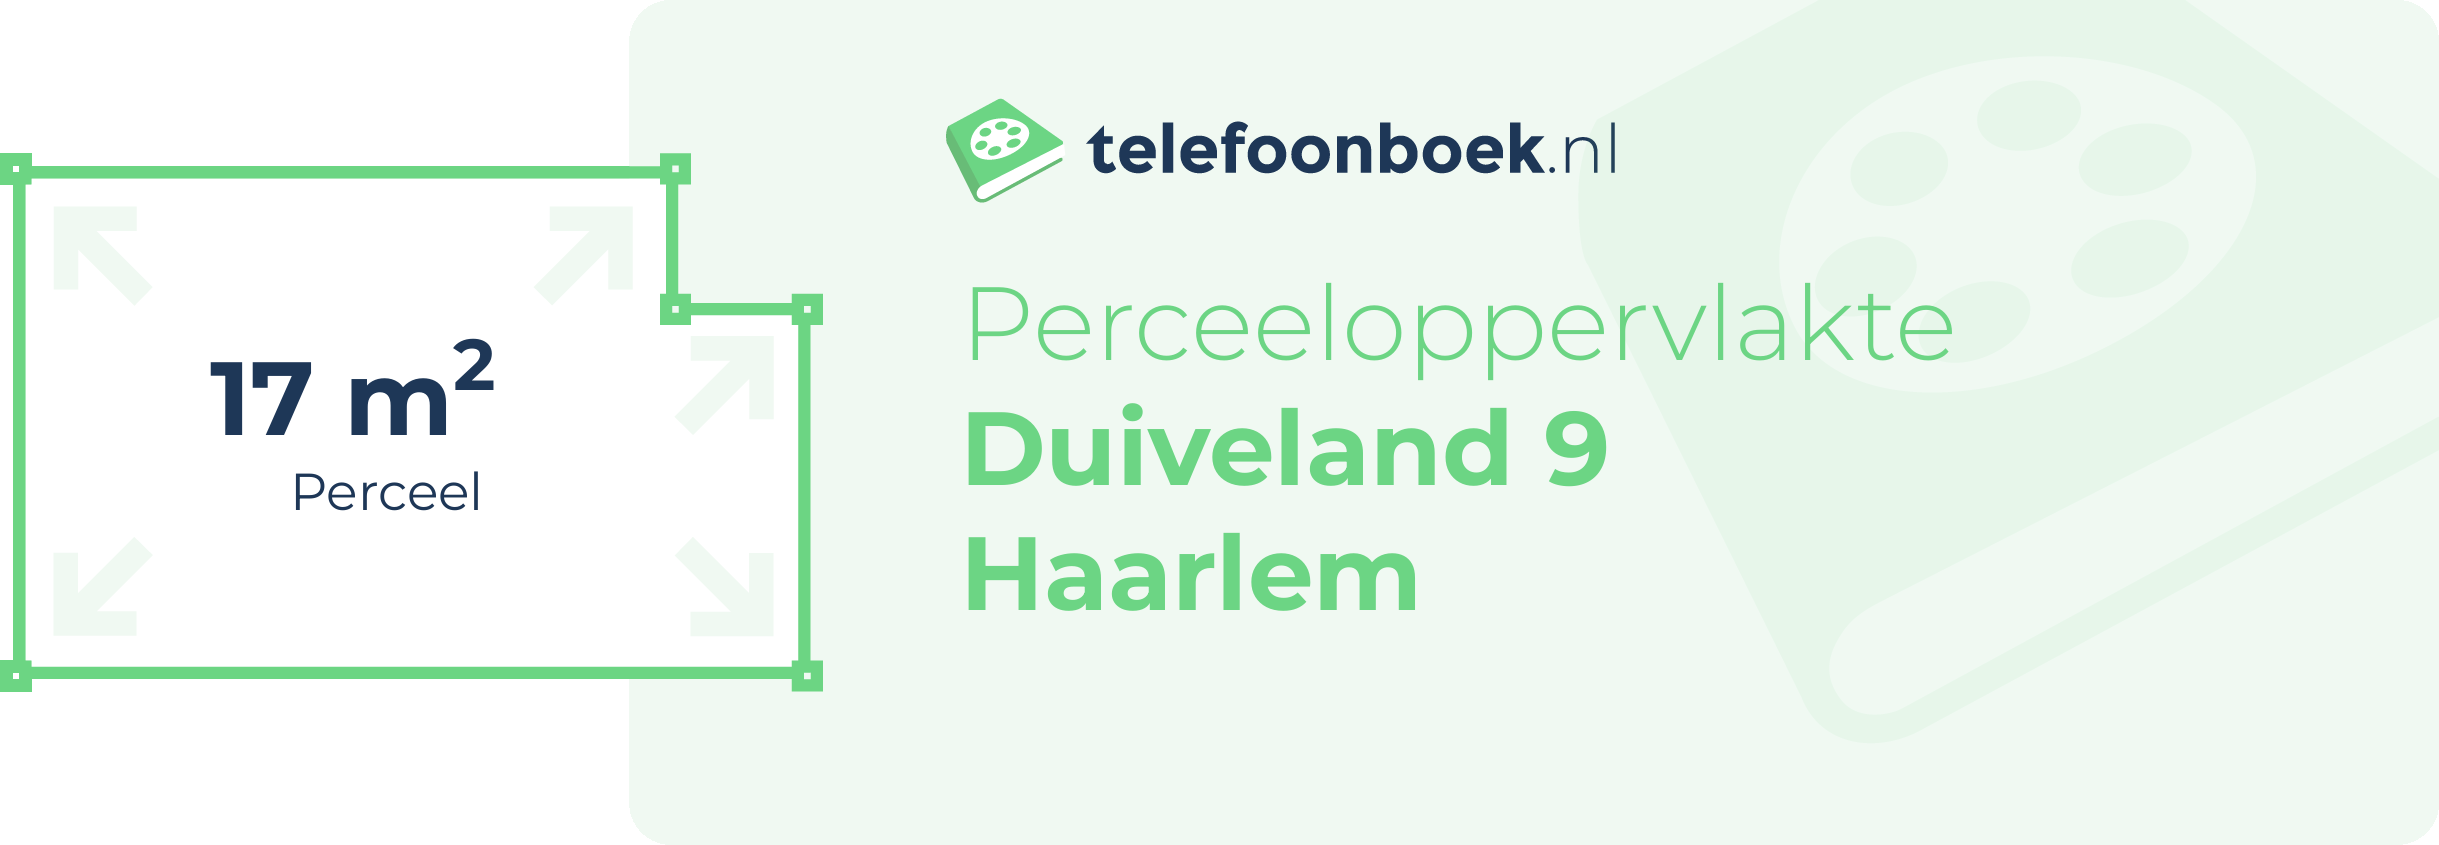 Perceeloppervlakte Duiveland 9 Haarlem